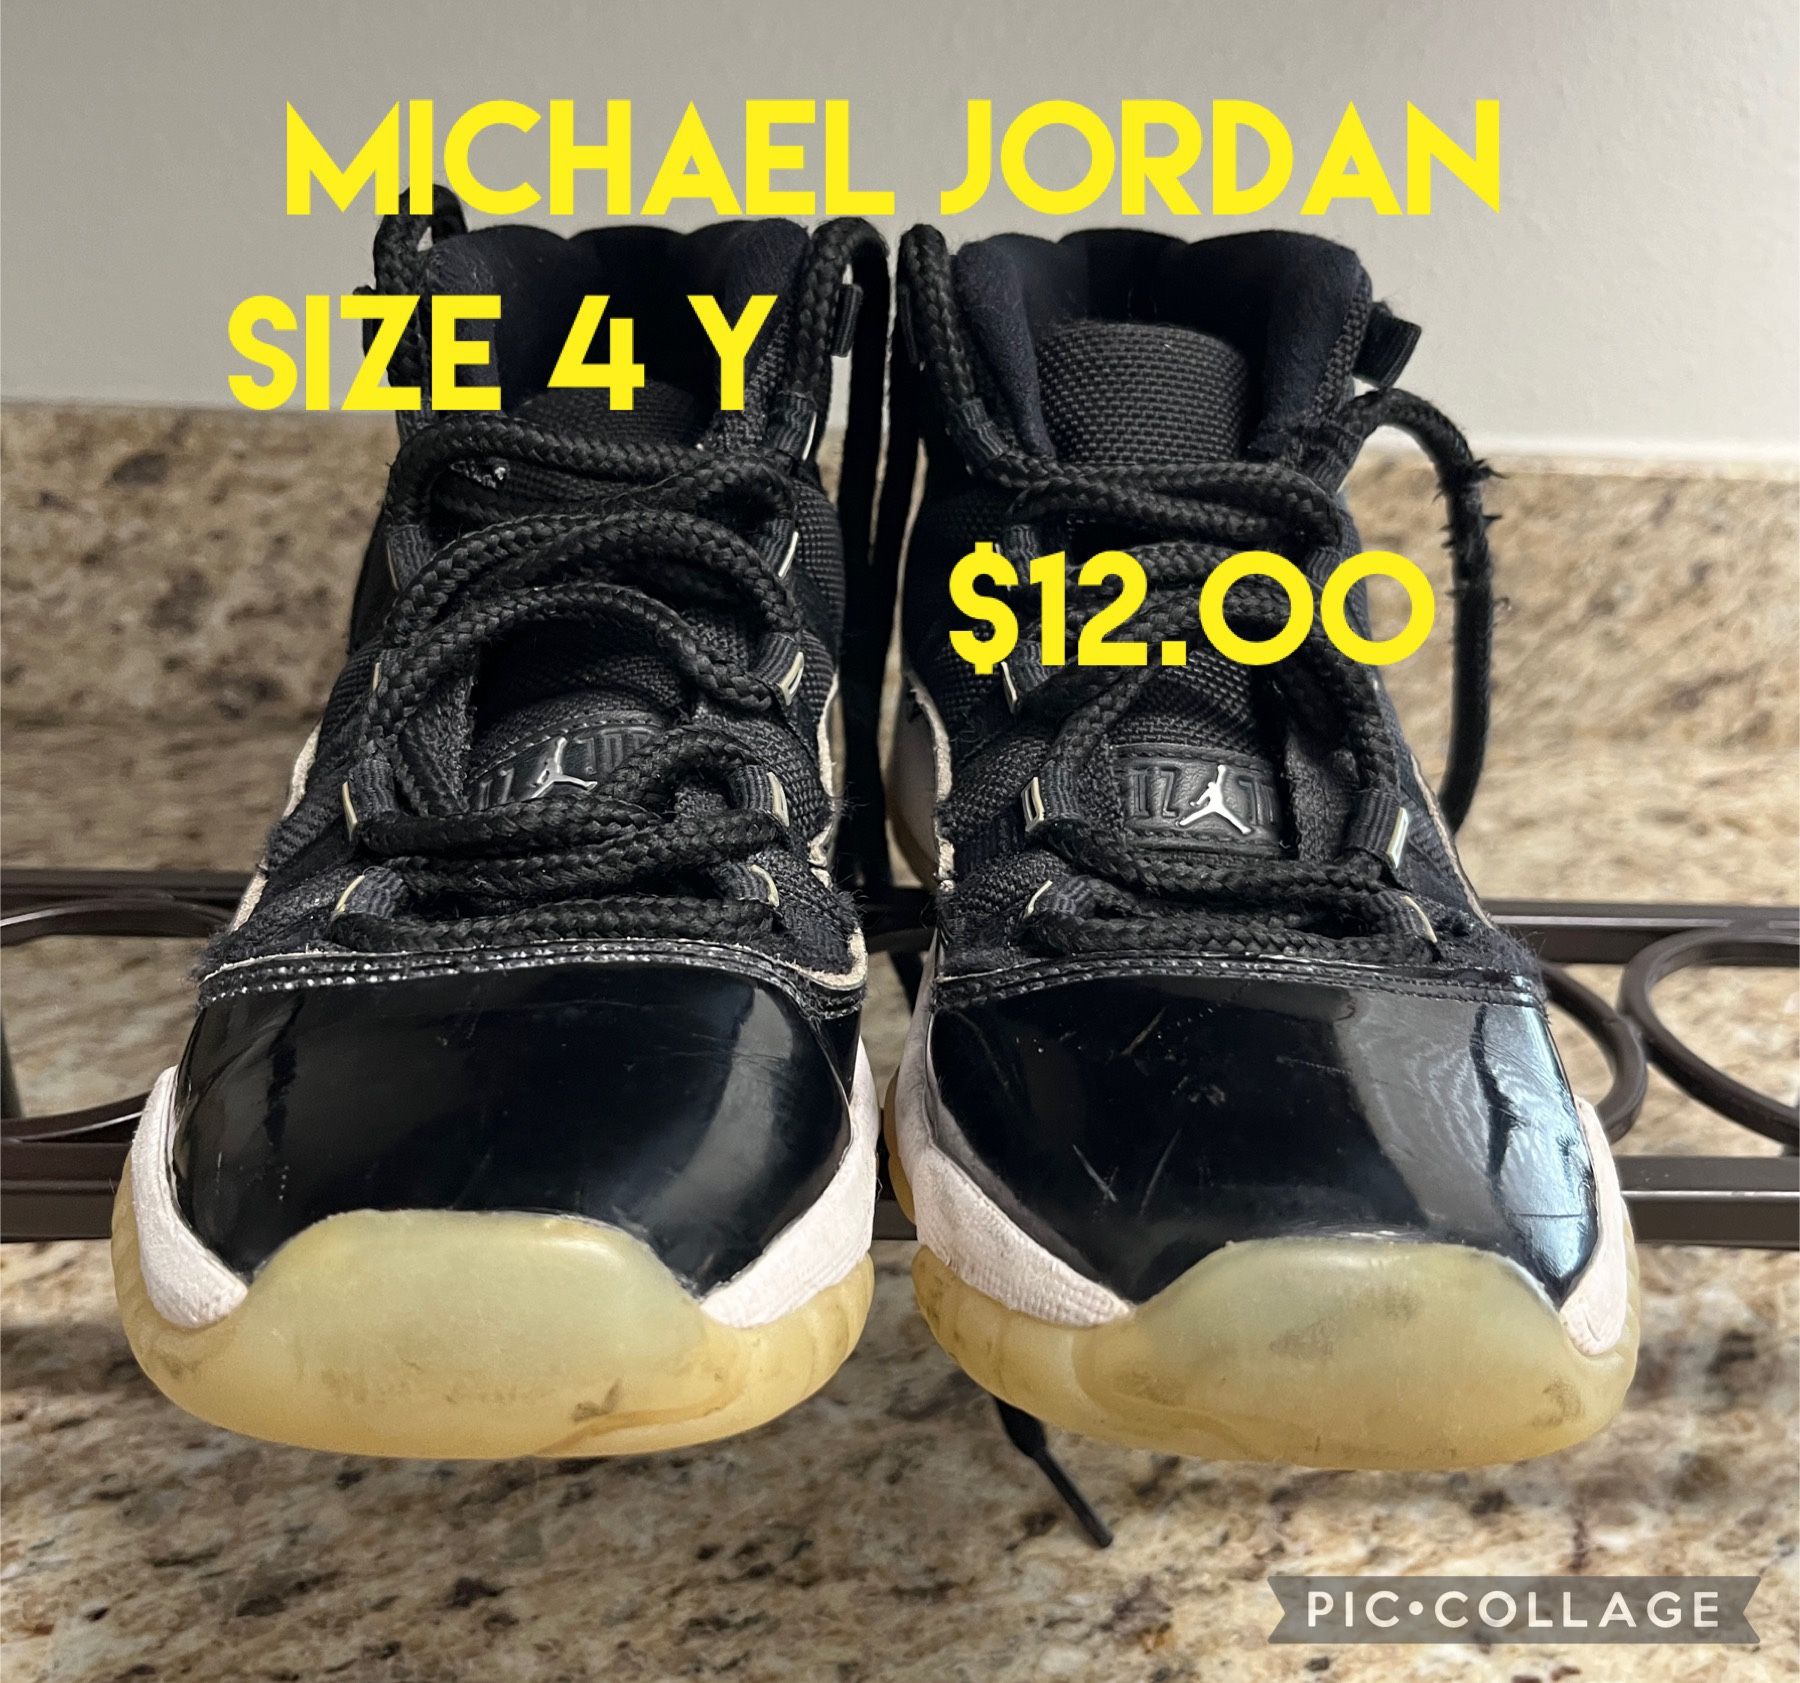 Air Jordan Shoes For Sale